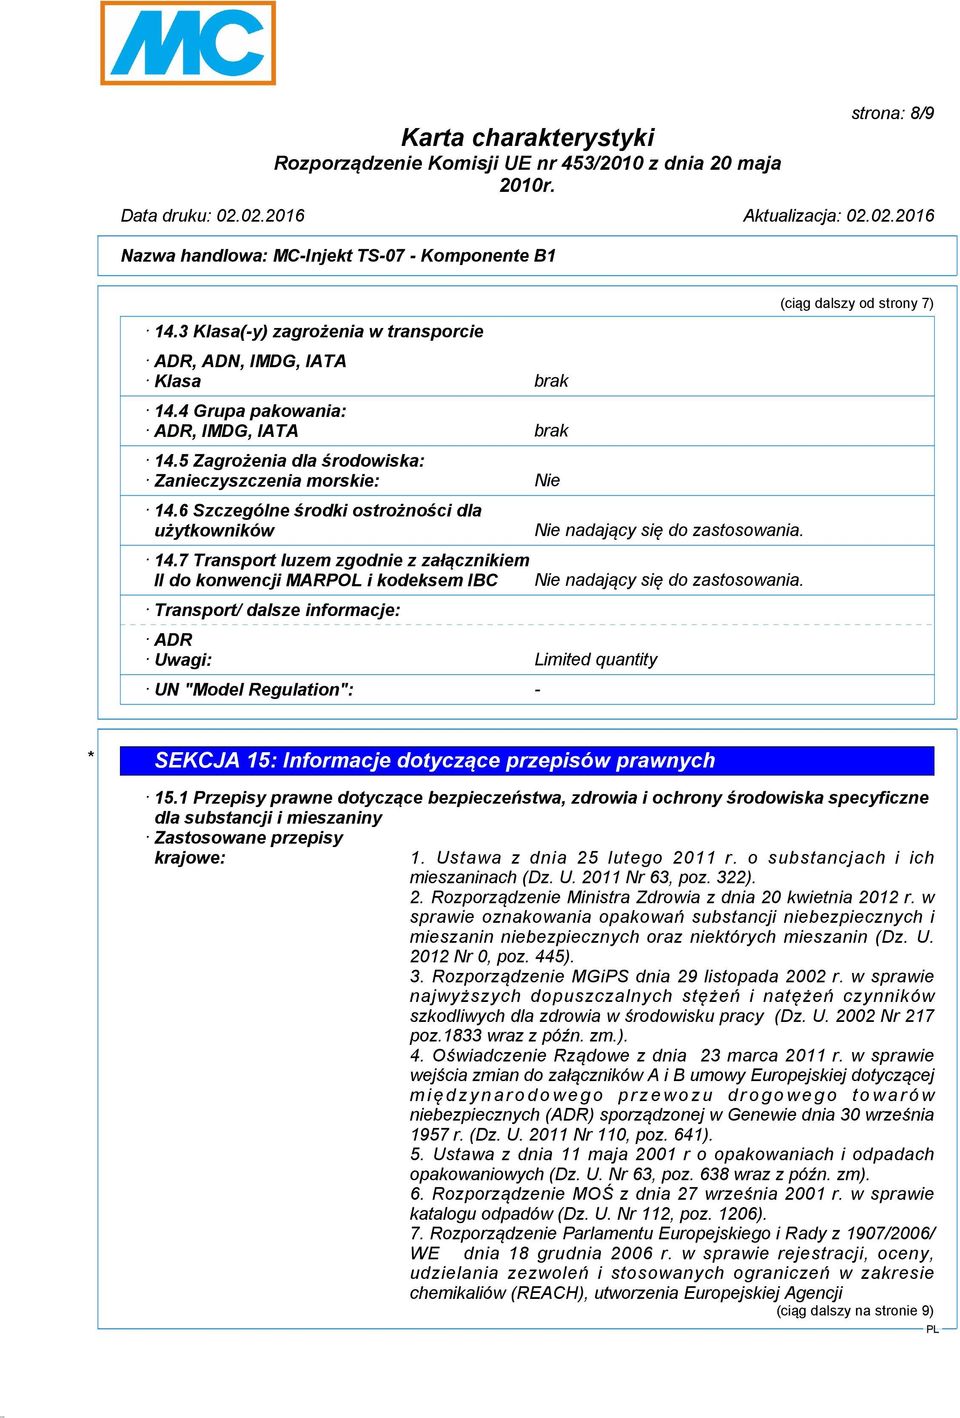 7 Transport luzem zgodnie z załącznikiem II do konwencji MARPOL i kodeksem IBC Transport/ dalsze informacje: ADR Uwagi: Limited quantity UN "Model Regulation": - Nie nadający się do zastosowania.